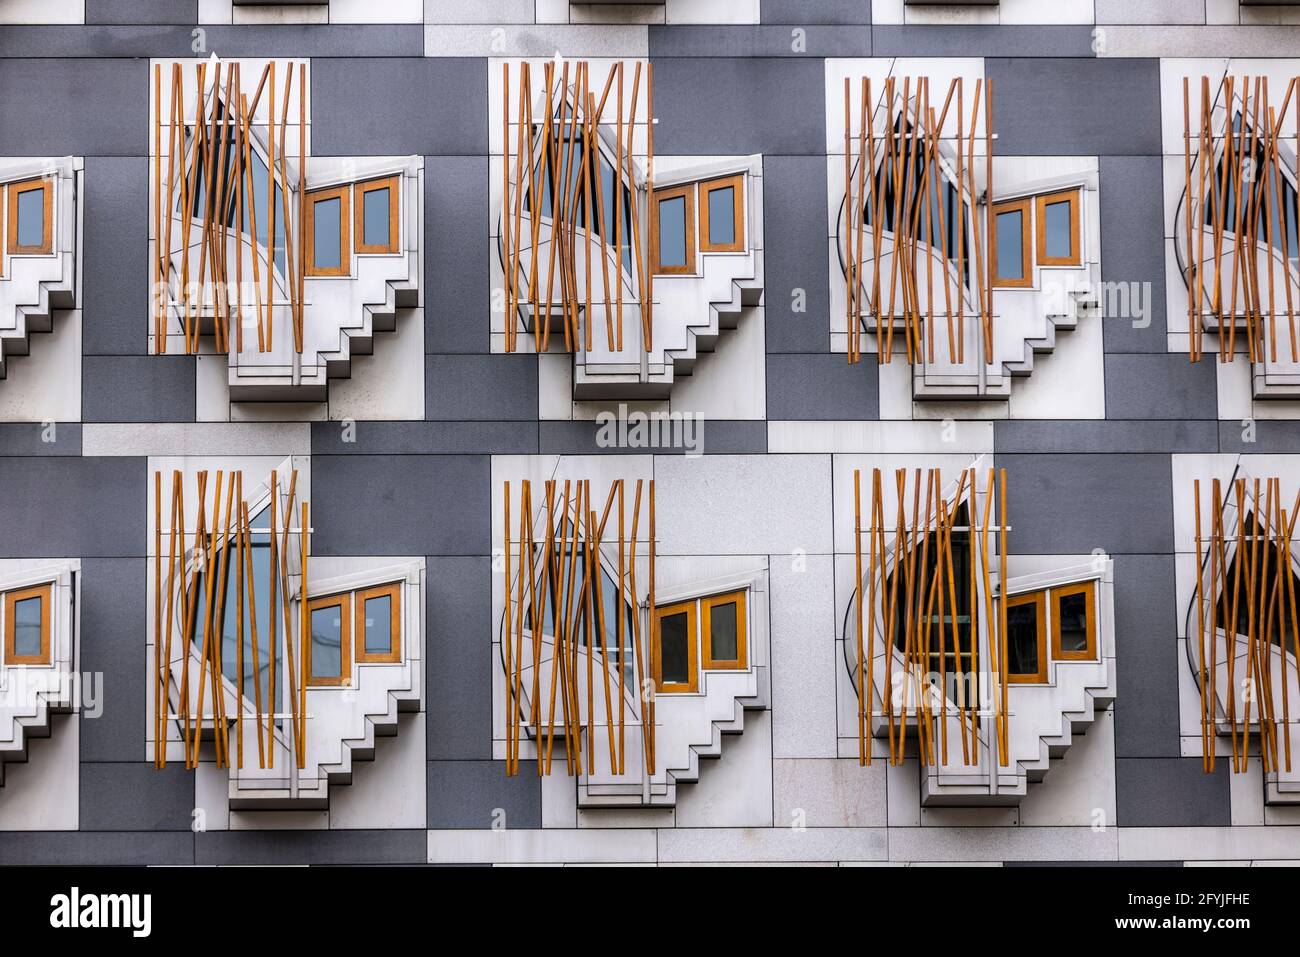 Una fotografia del blocco dei deputati del Parlamento scozzese. Ci sono finestre geometriche chiamate baccelli di pensiero o baccelli di contemplazione in file Foto Stock